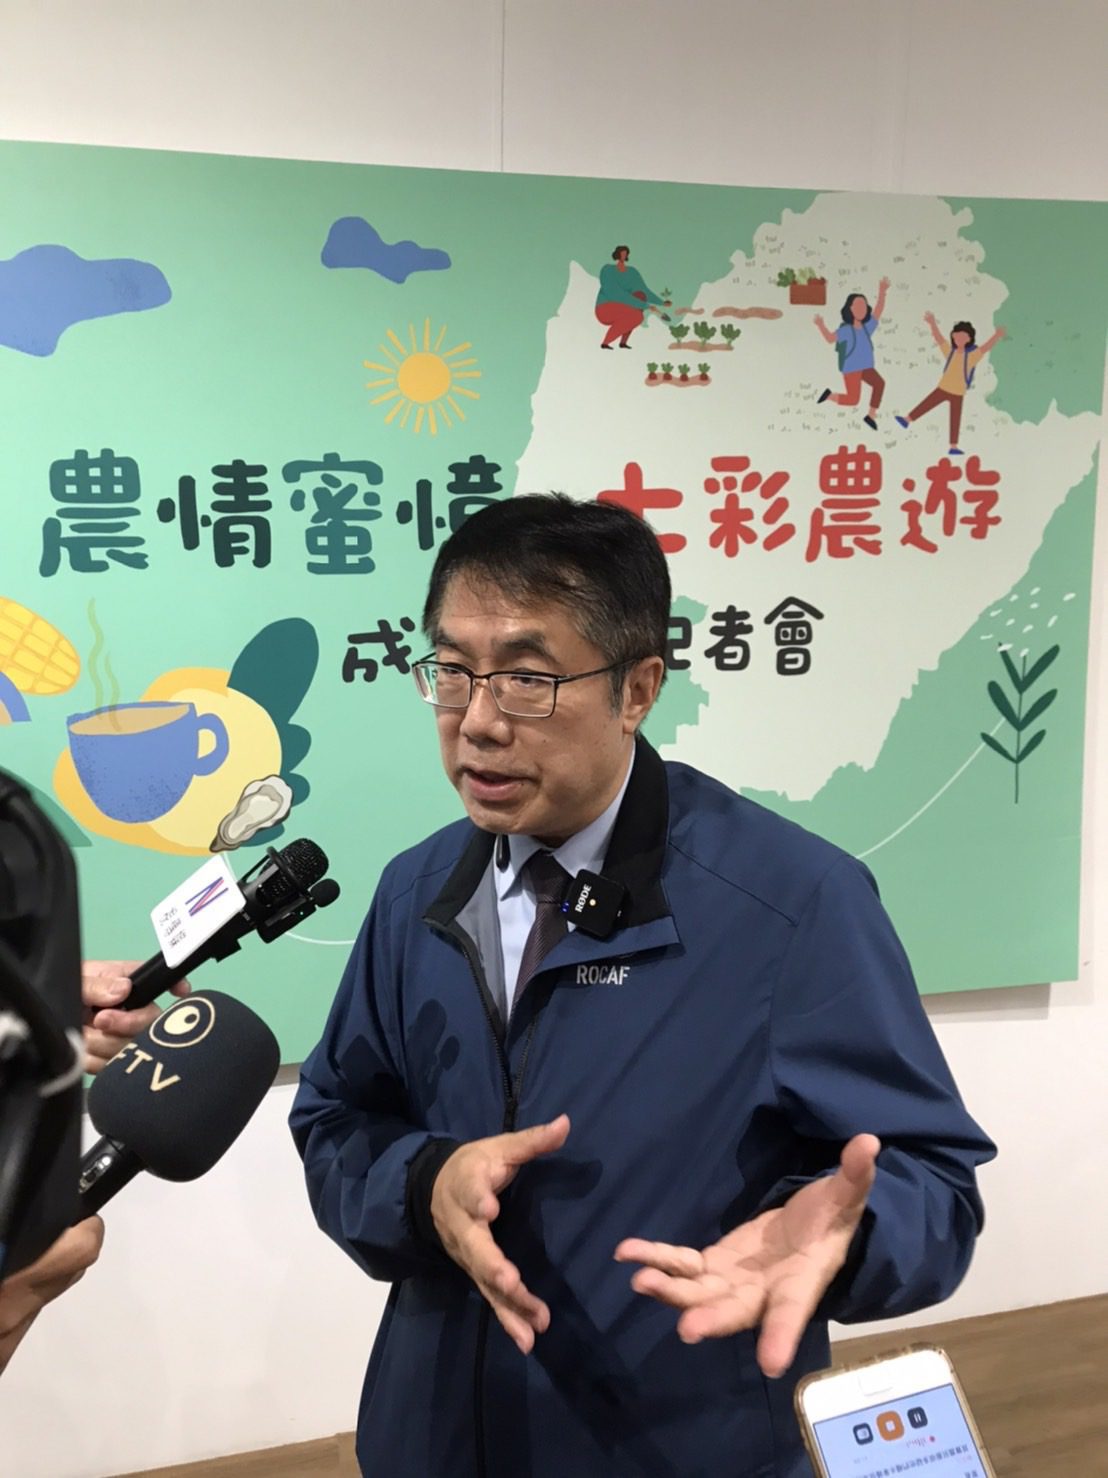 台南市長黃偉哲擘劃台南休閒旅遊新藍圖   休閒農業邁大步向前走